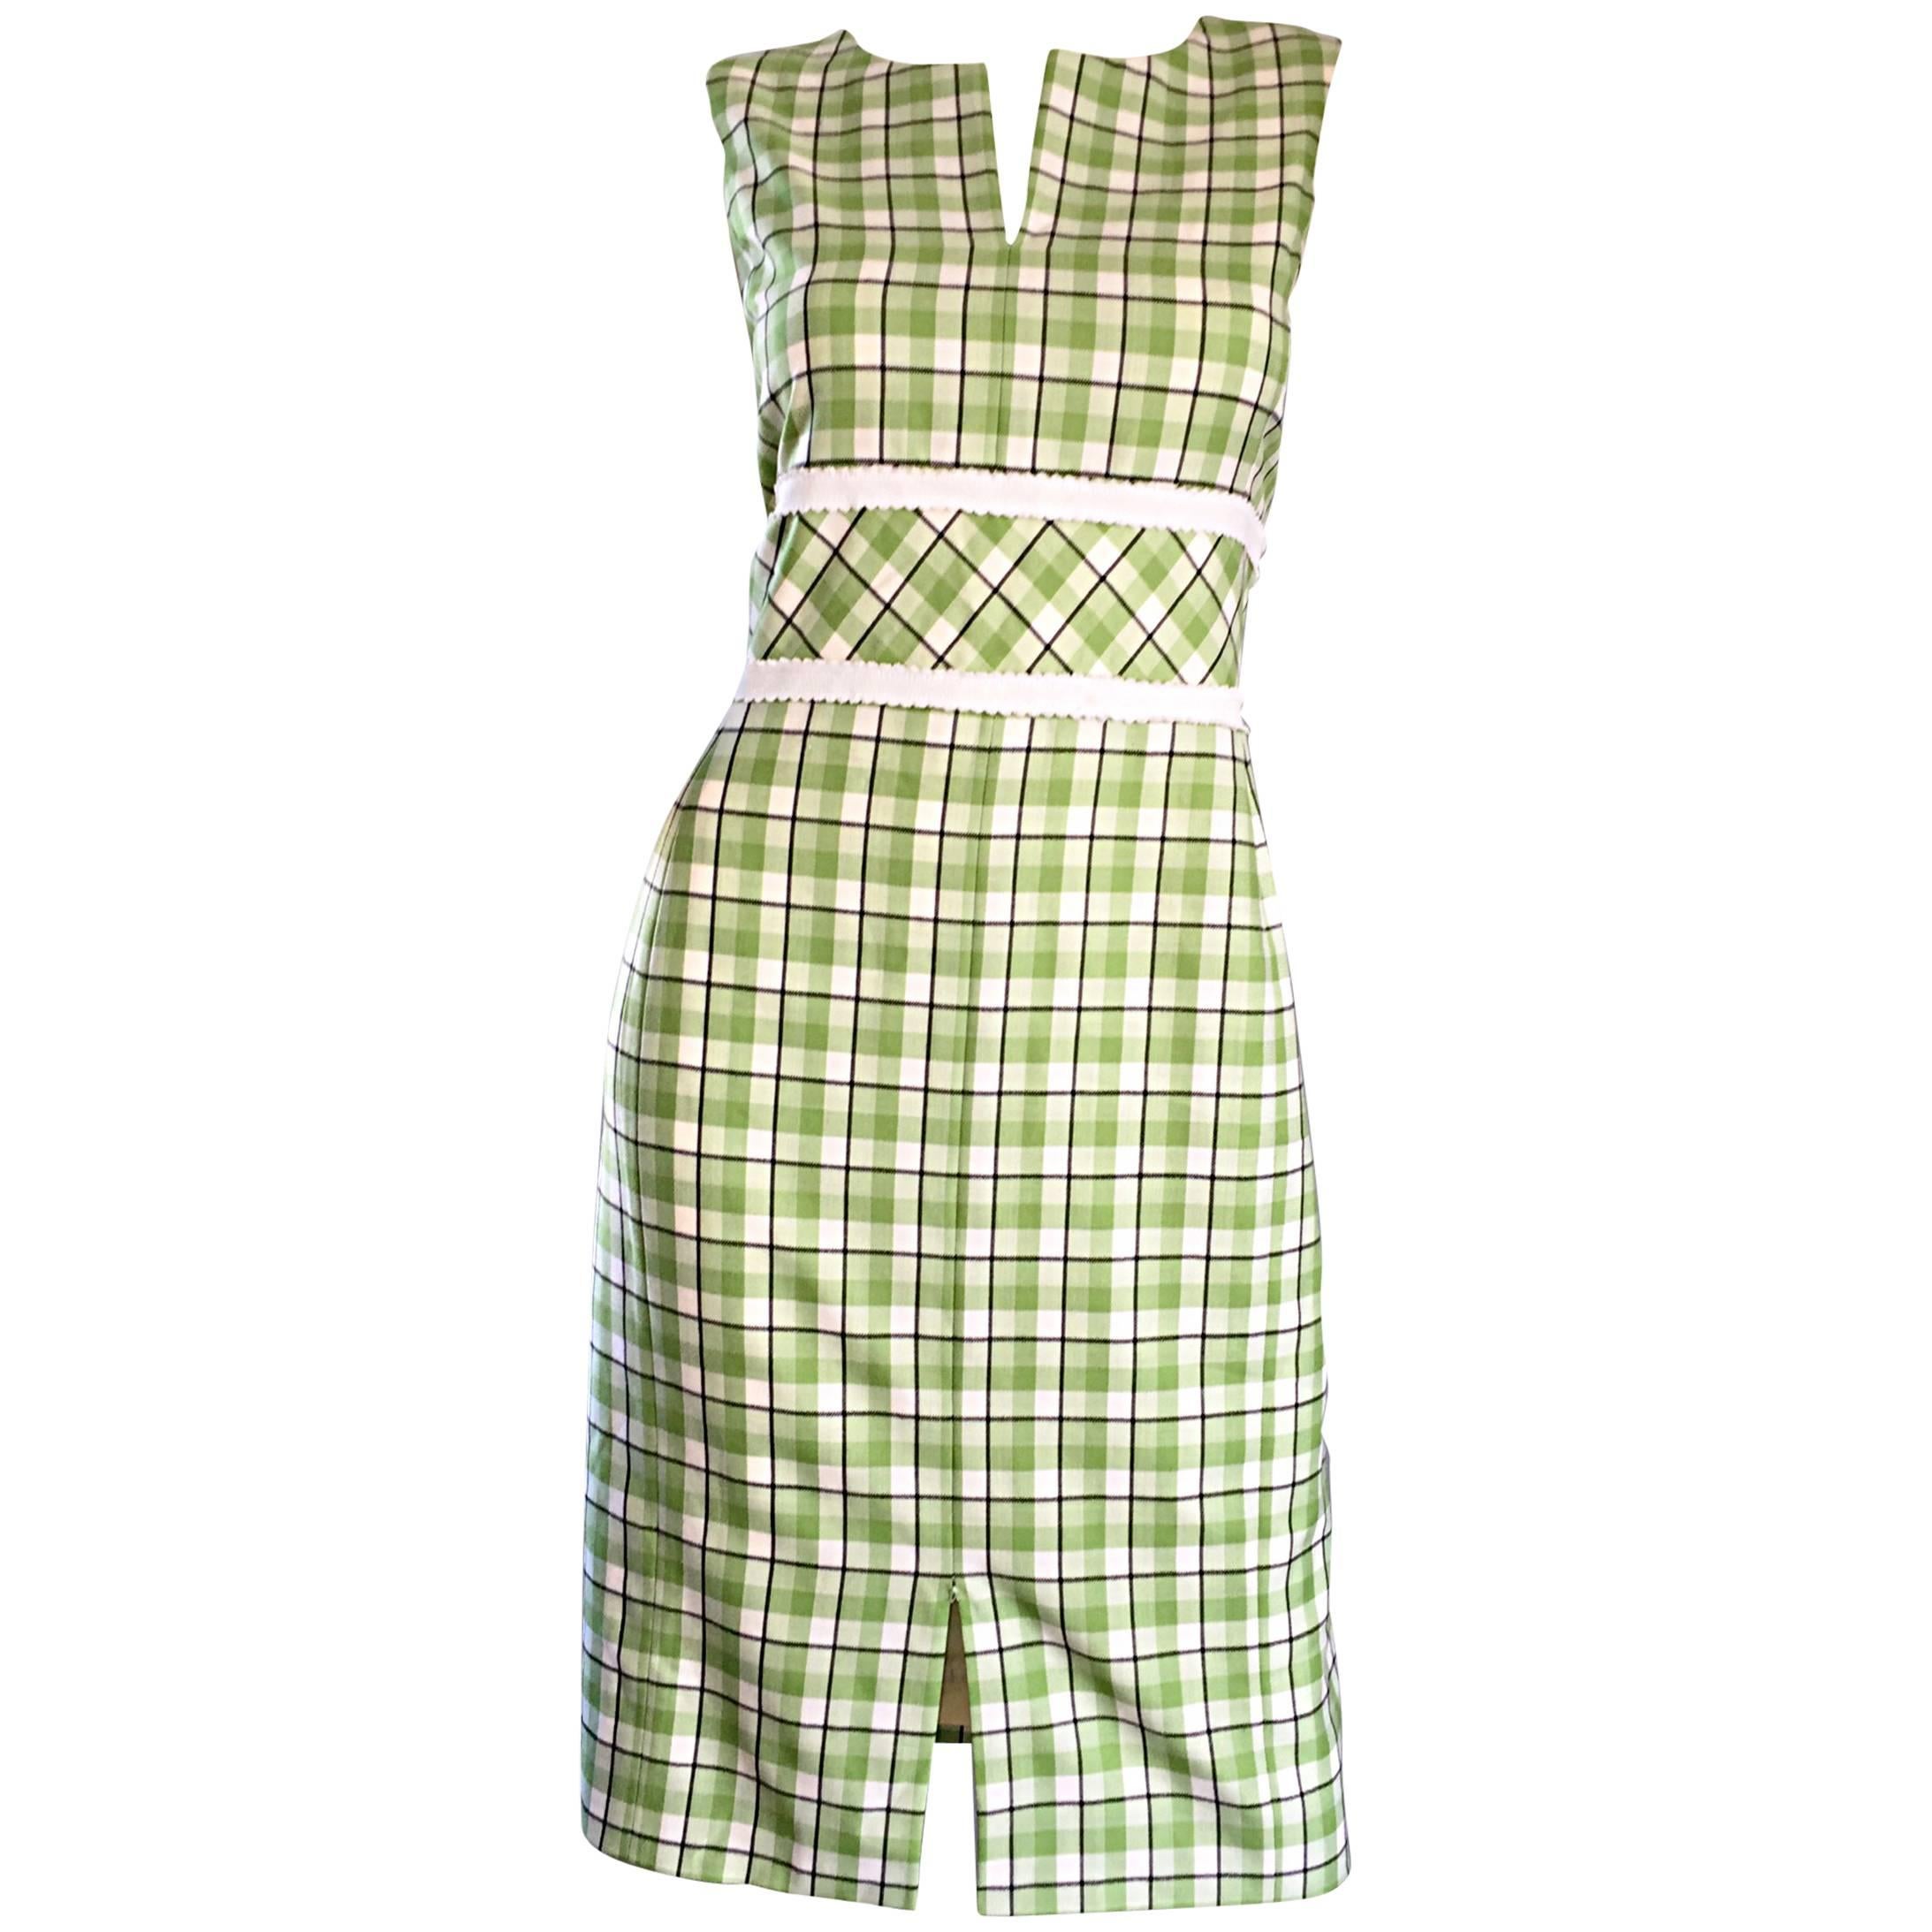 Oscar de La Renta Size 6 / 8 Saks 5th Ave Green + White Checkered Plaid Dress 